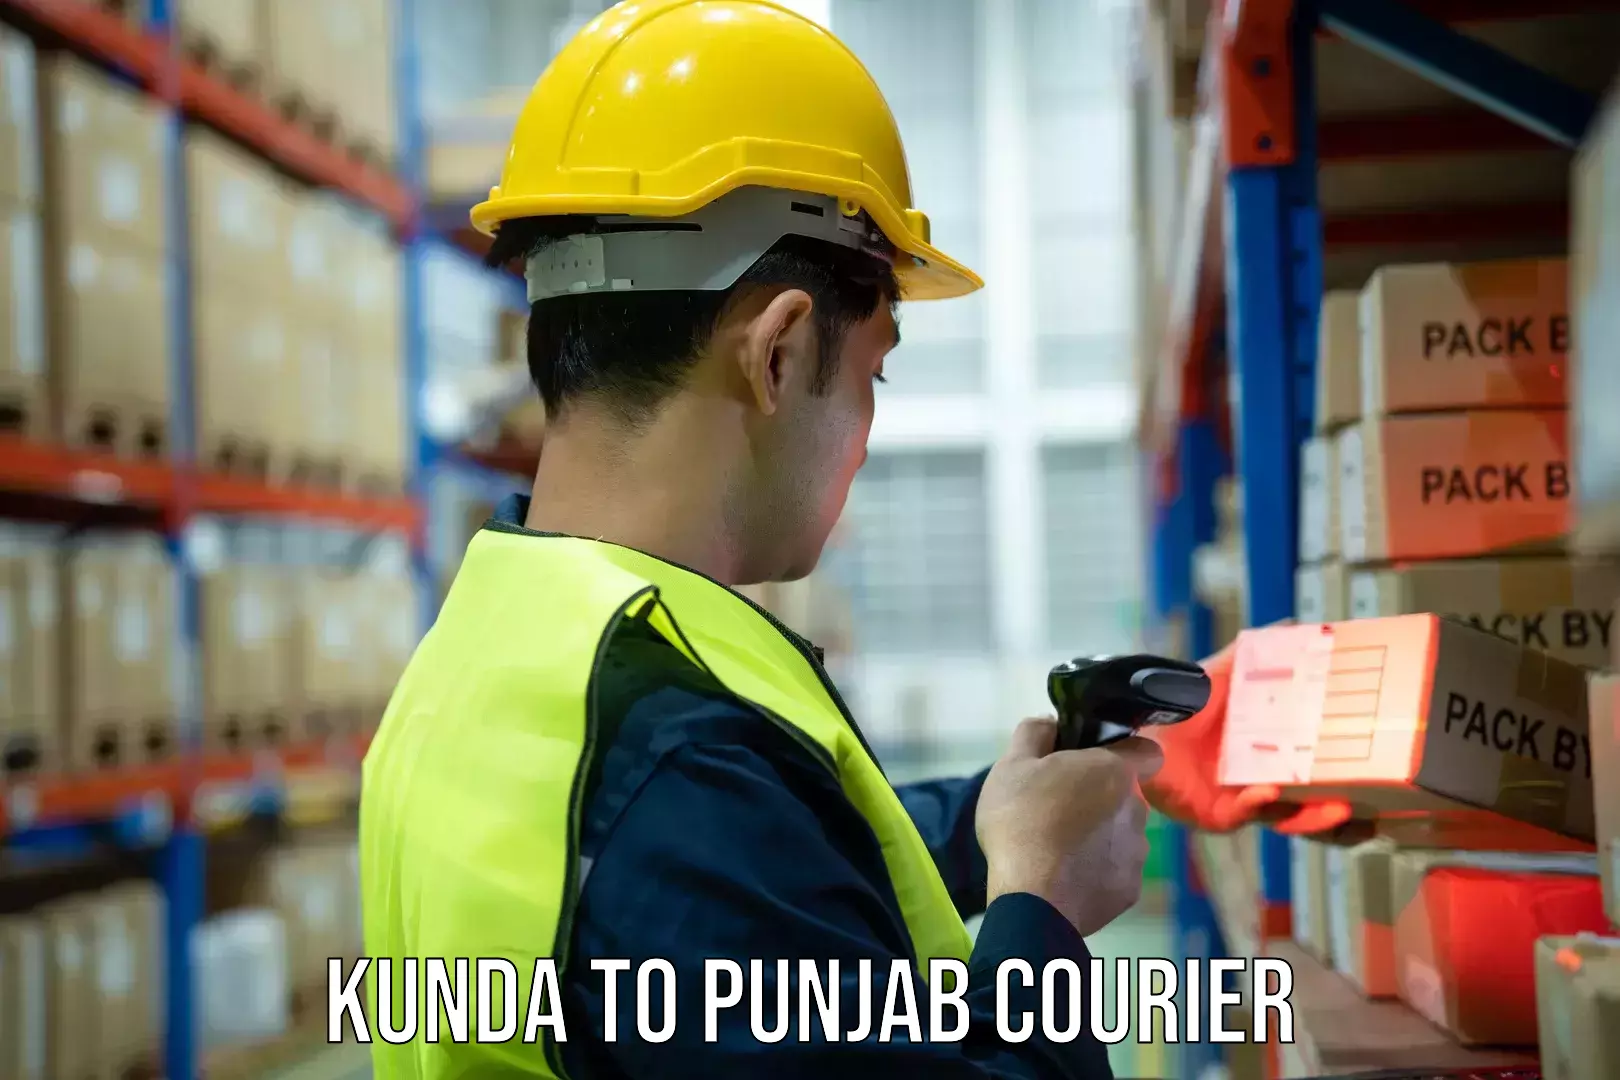 Courier app Kunda to Punjab